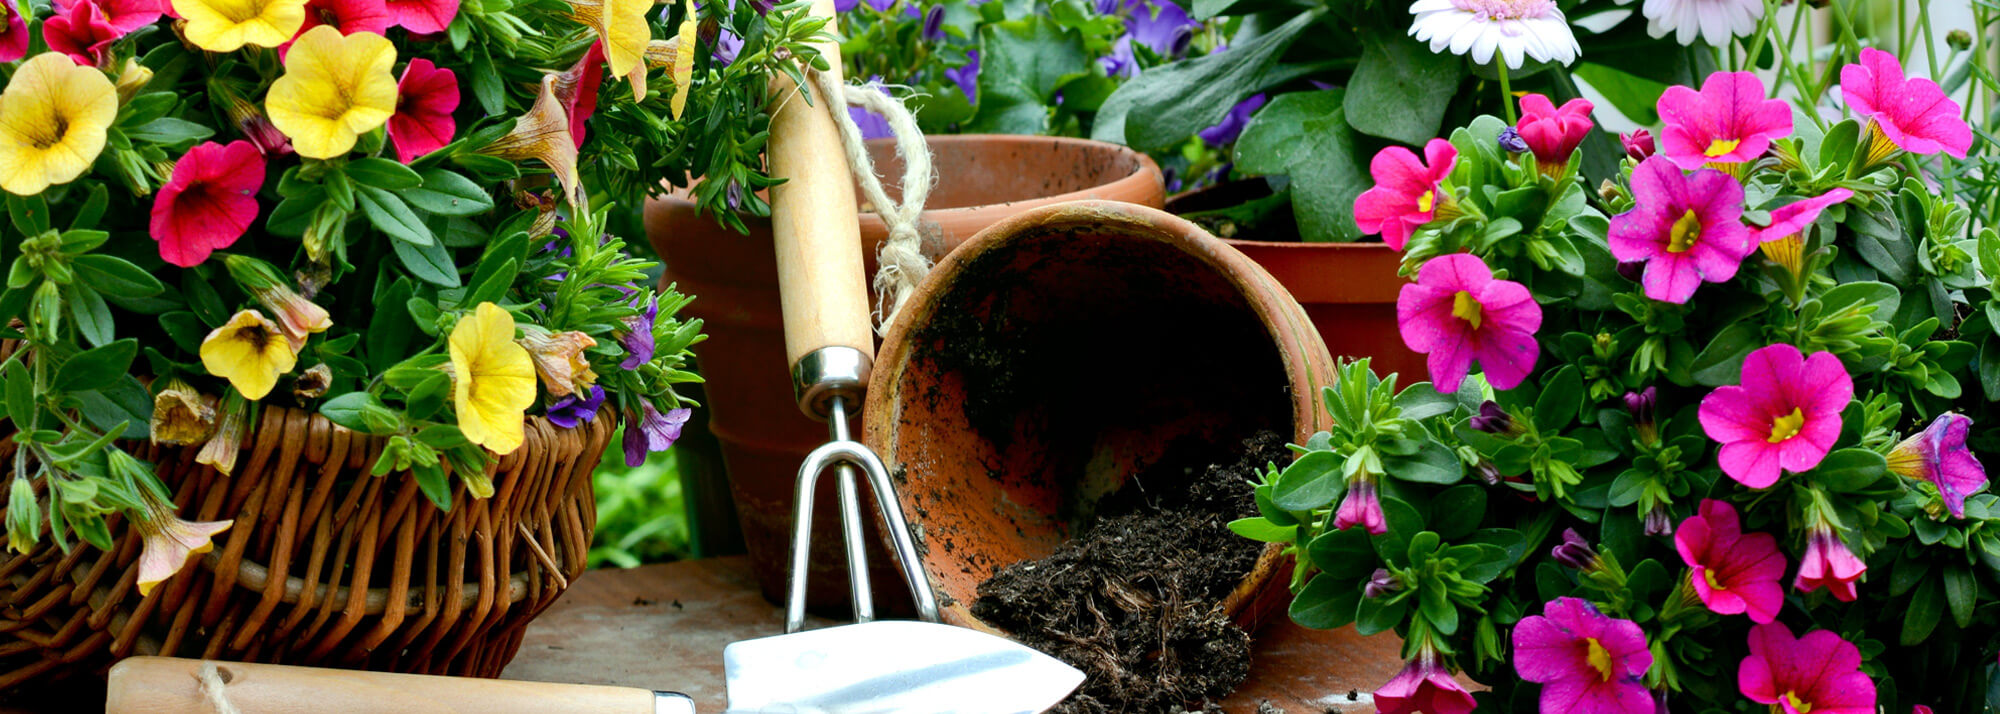 Blumenerde Substrathersteller, Blumen mit Blumentopf und Gartenschauefelchen